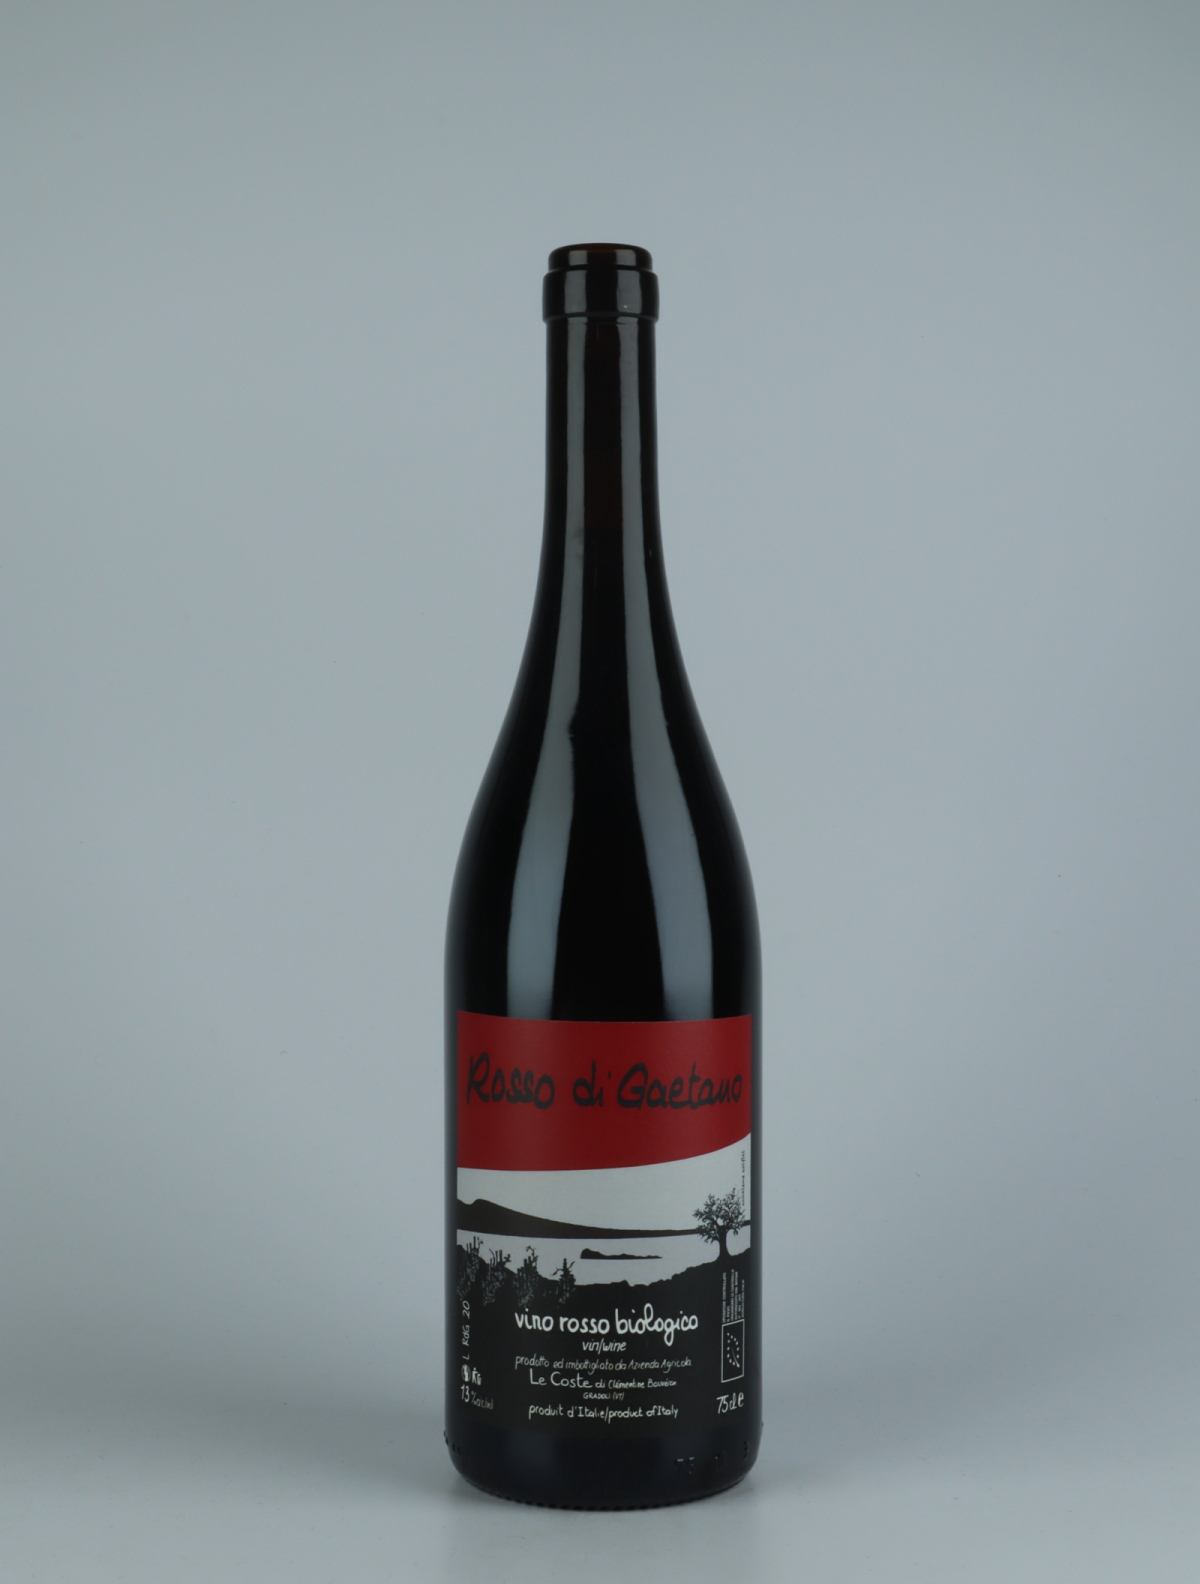 A bottle 2020 Rosso di Gaetano Red wine from Le Coste, Lazio in Italy